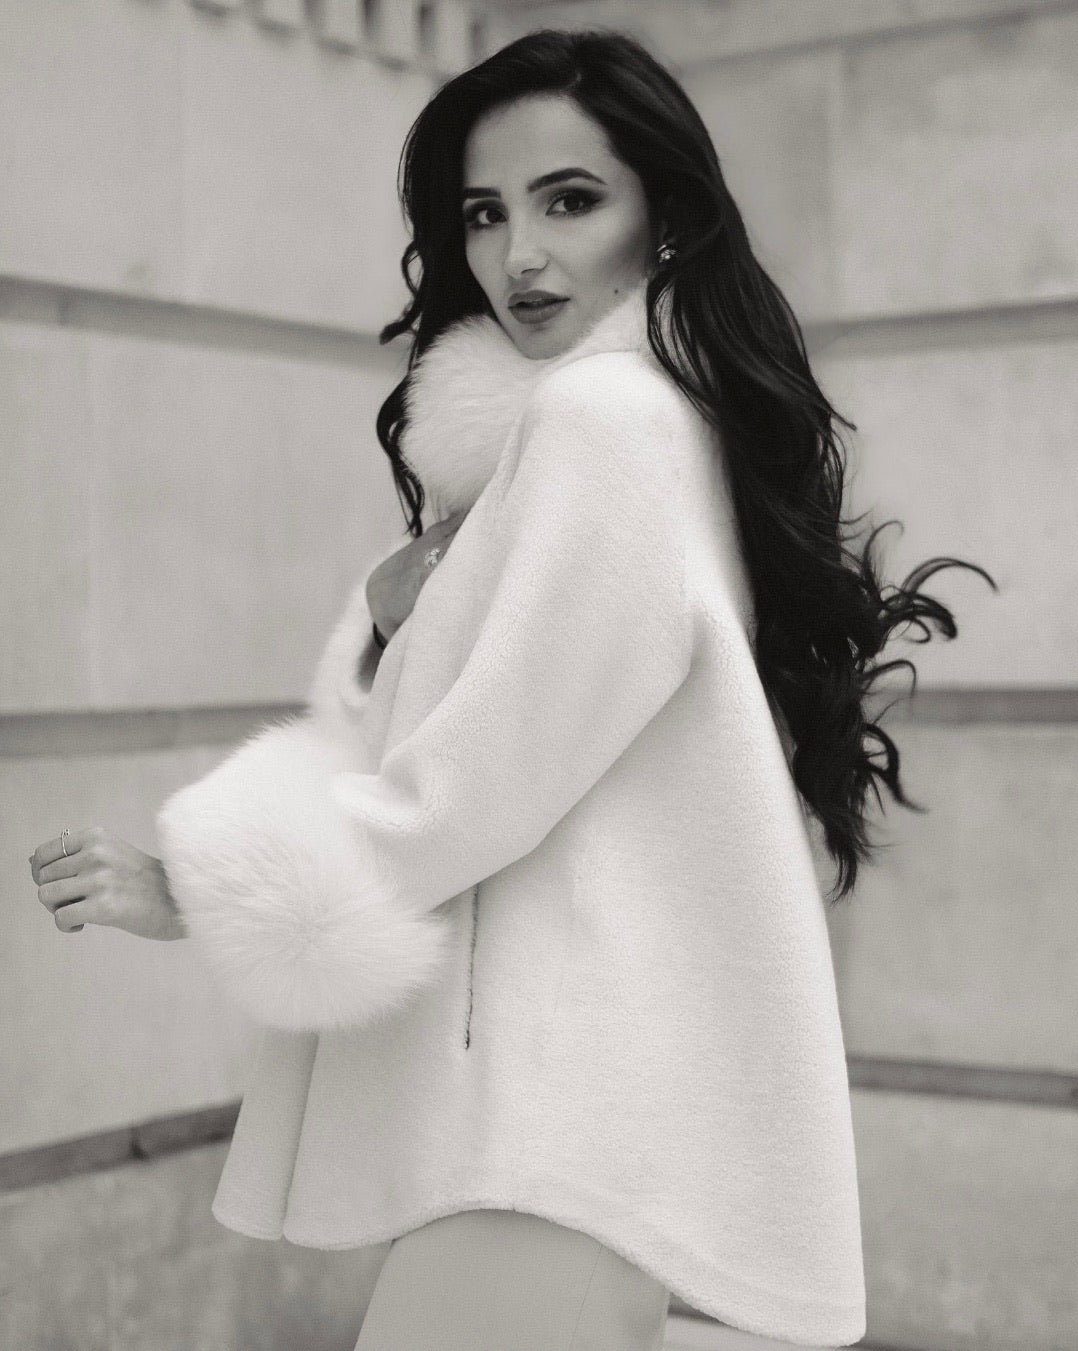 'Scarlett' Wool and Faux Fur Cape Coat in Bianco